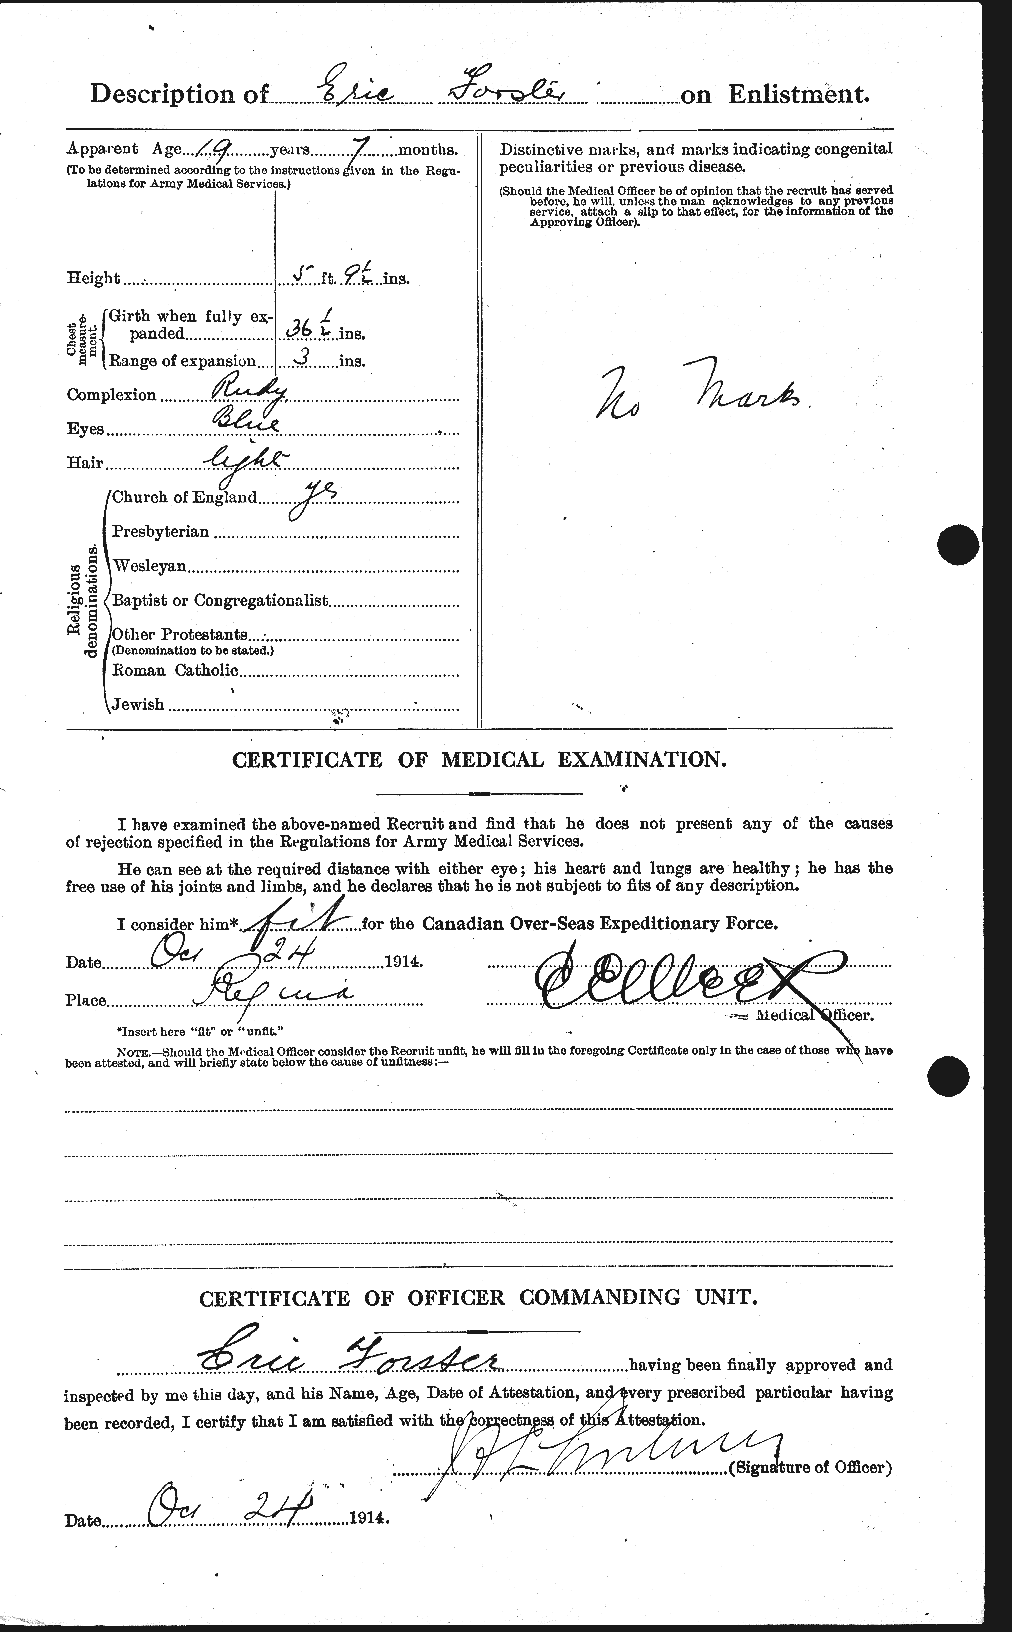 Dossiers du Personnel de la Première Guerre mondiale - CEC 330598b